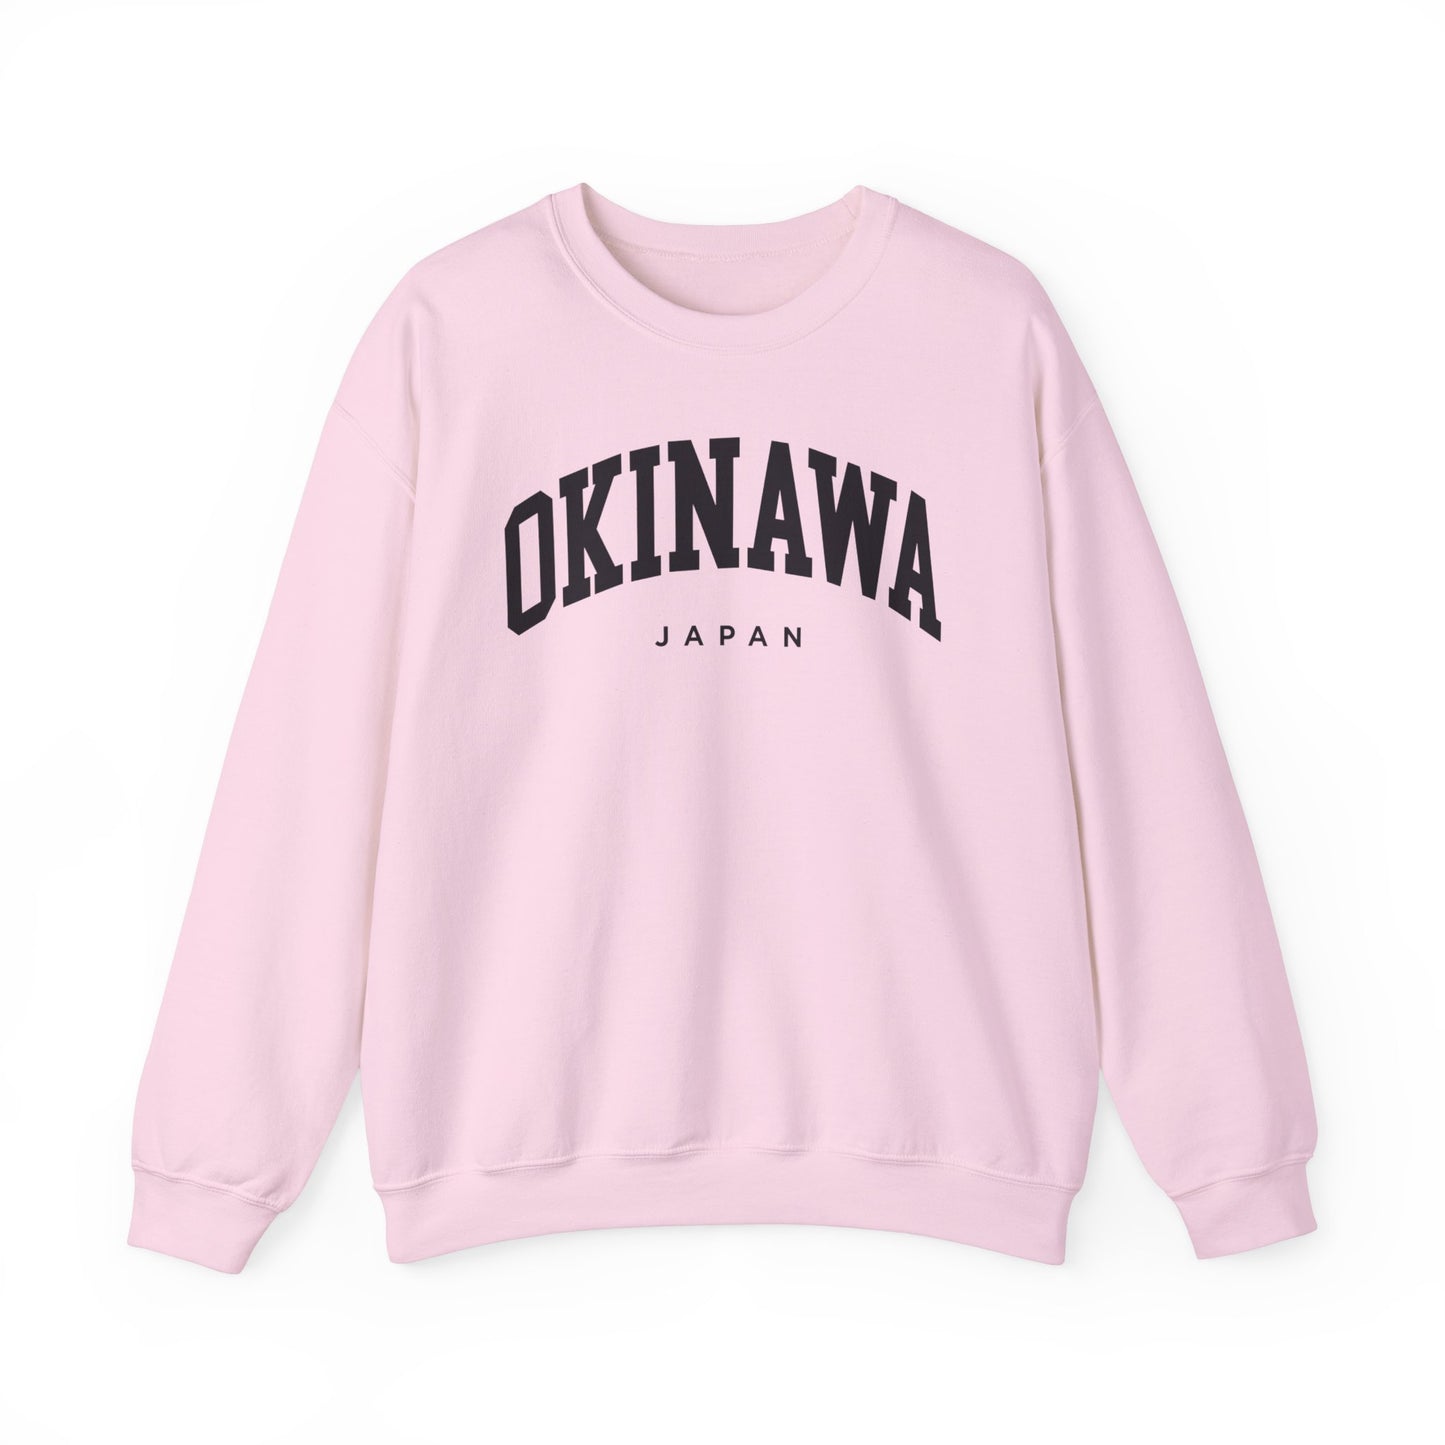 Okinawa Japan Sweatshirt